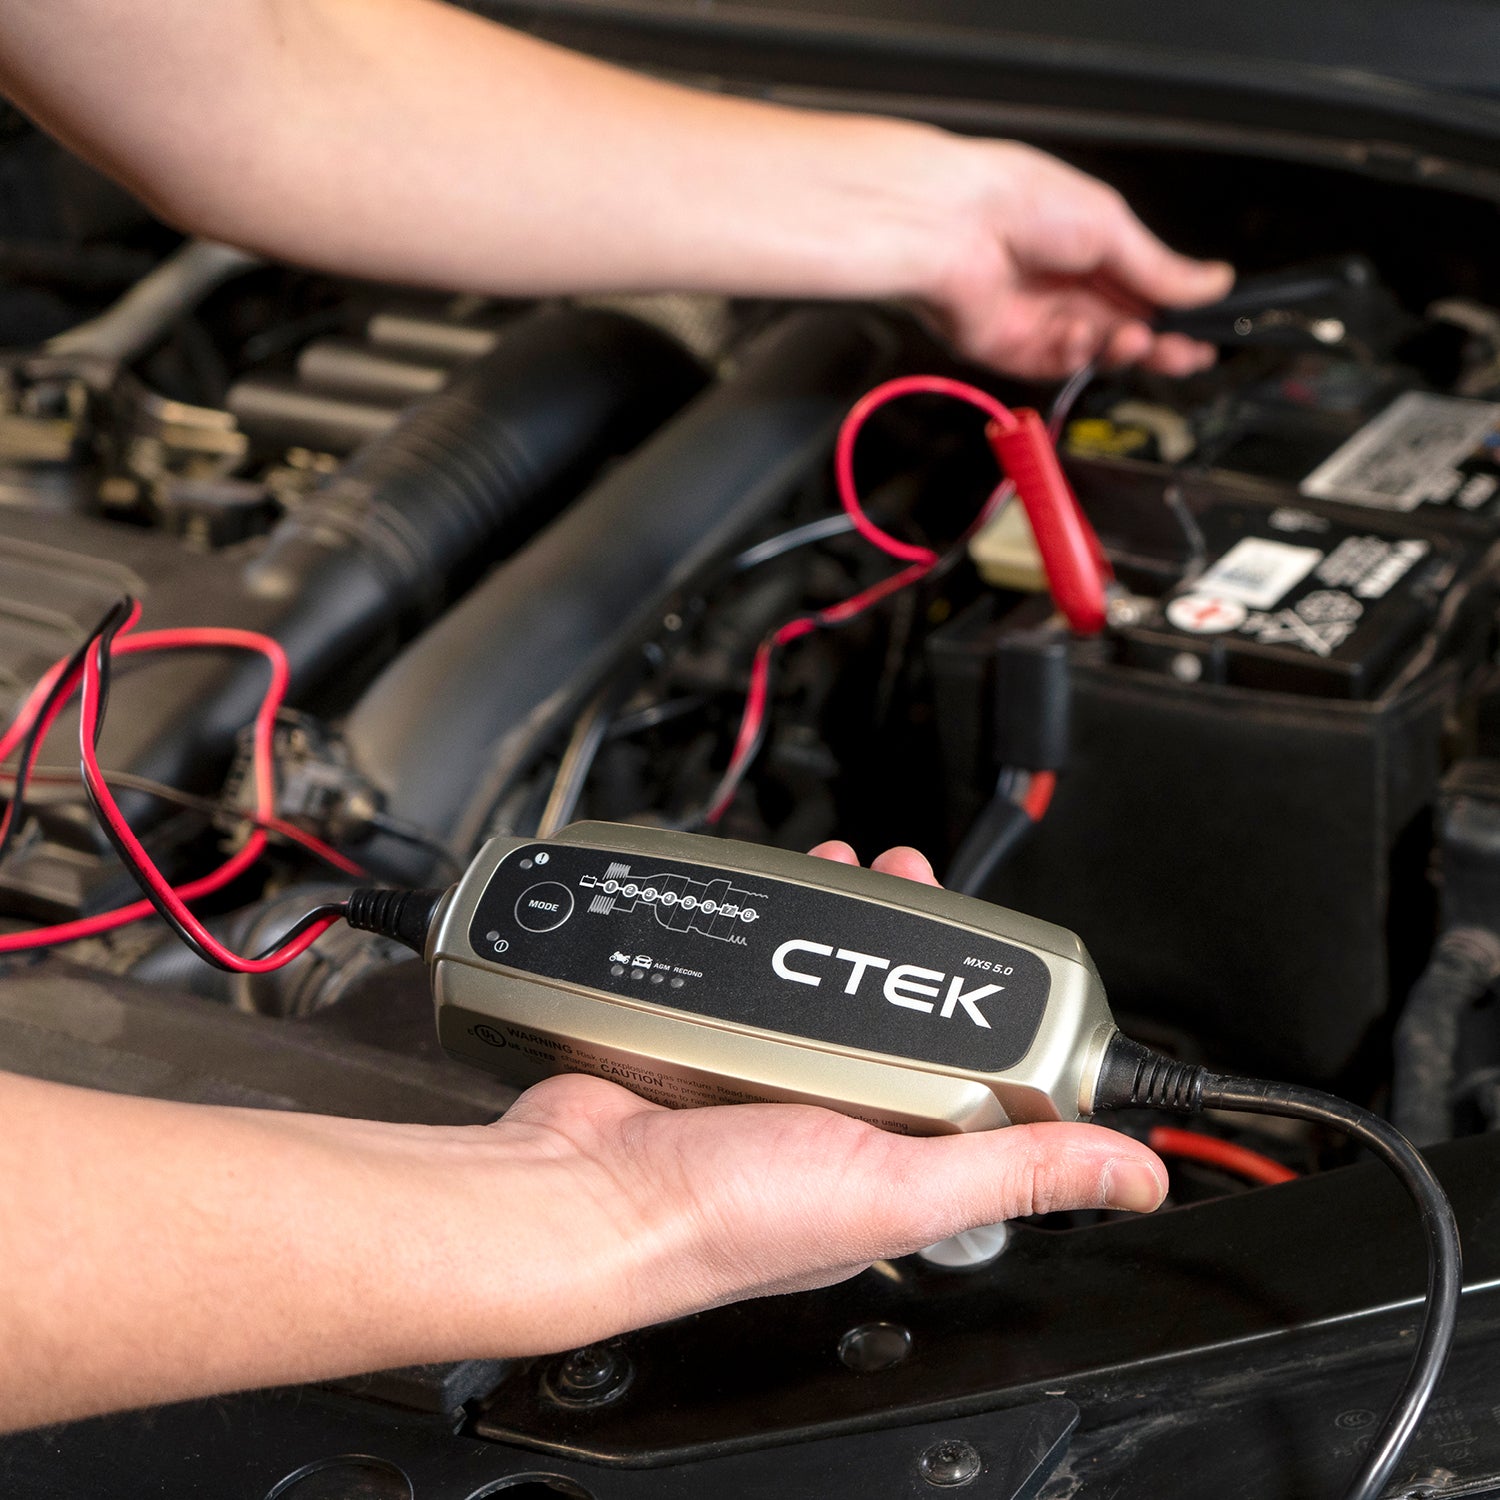 CTEK MXS 5.0 12v Battery Charger Kit